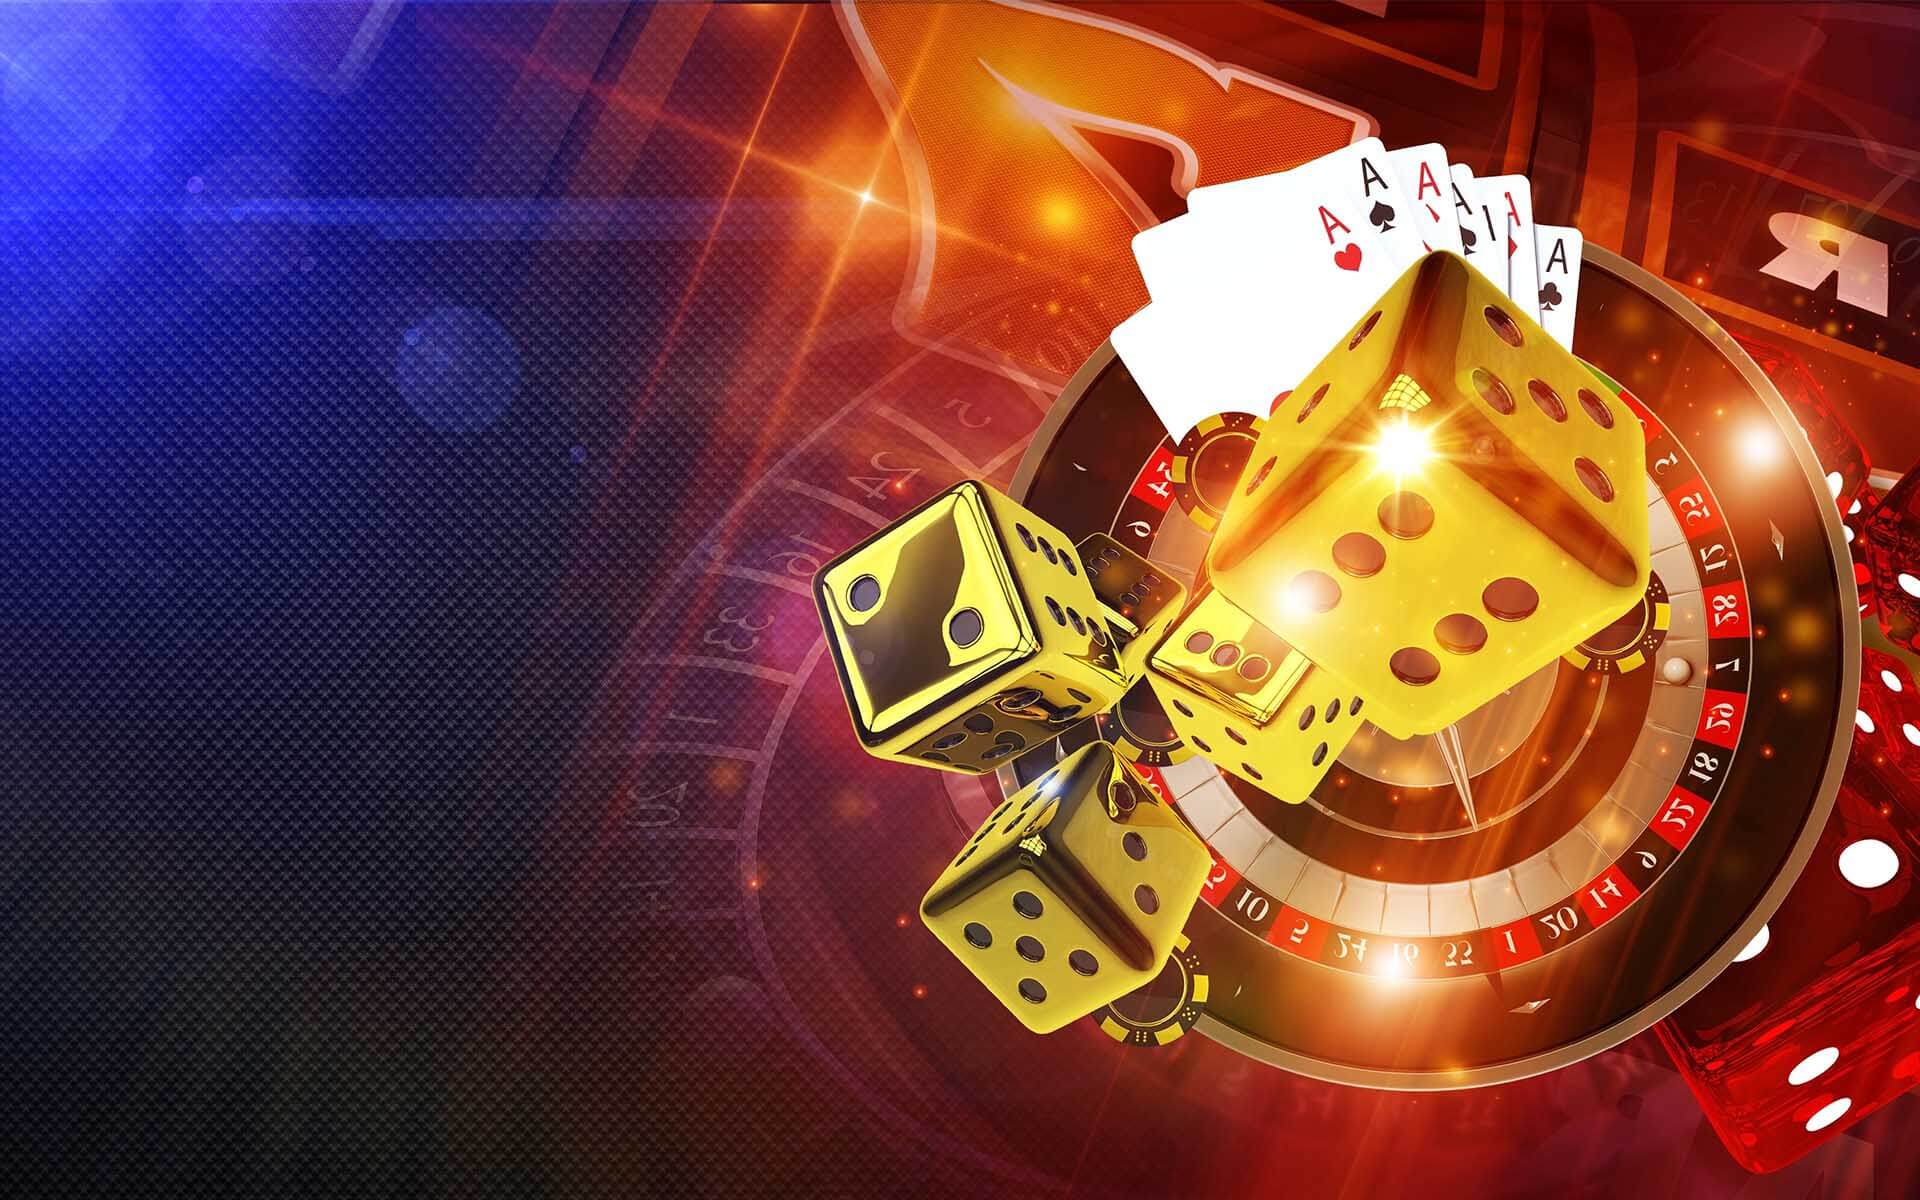 spinbookie casino